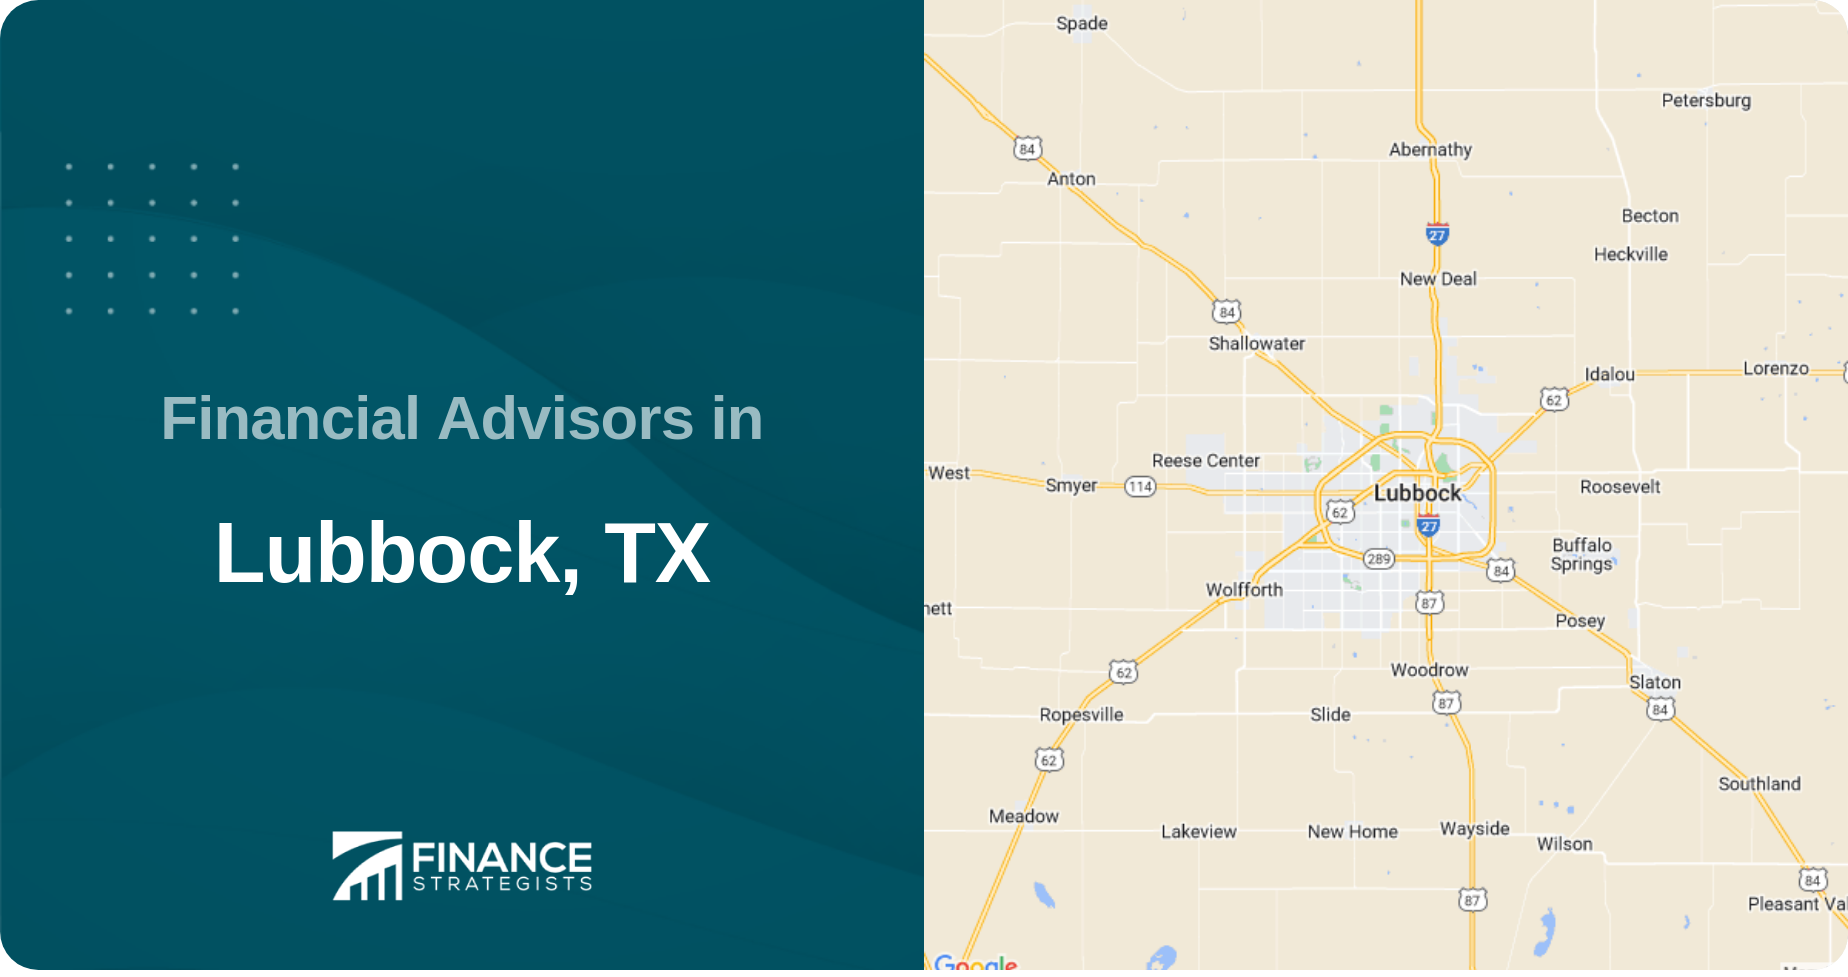 Financial Advisors in Lubbock, TX